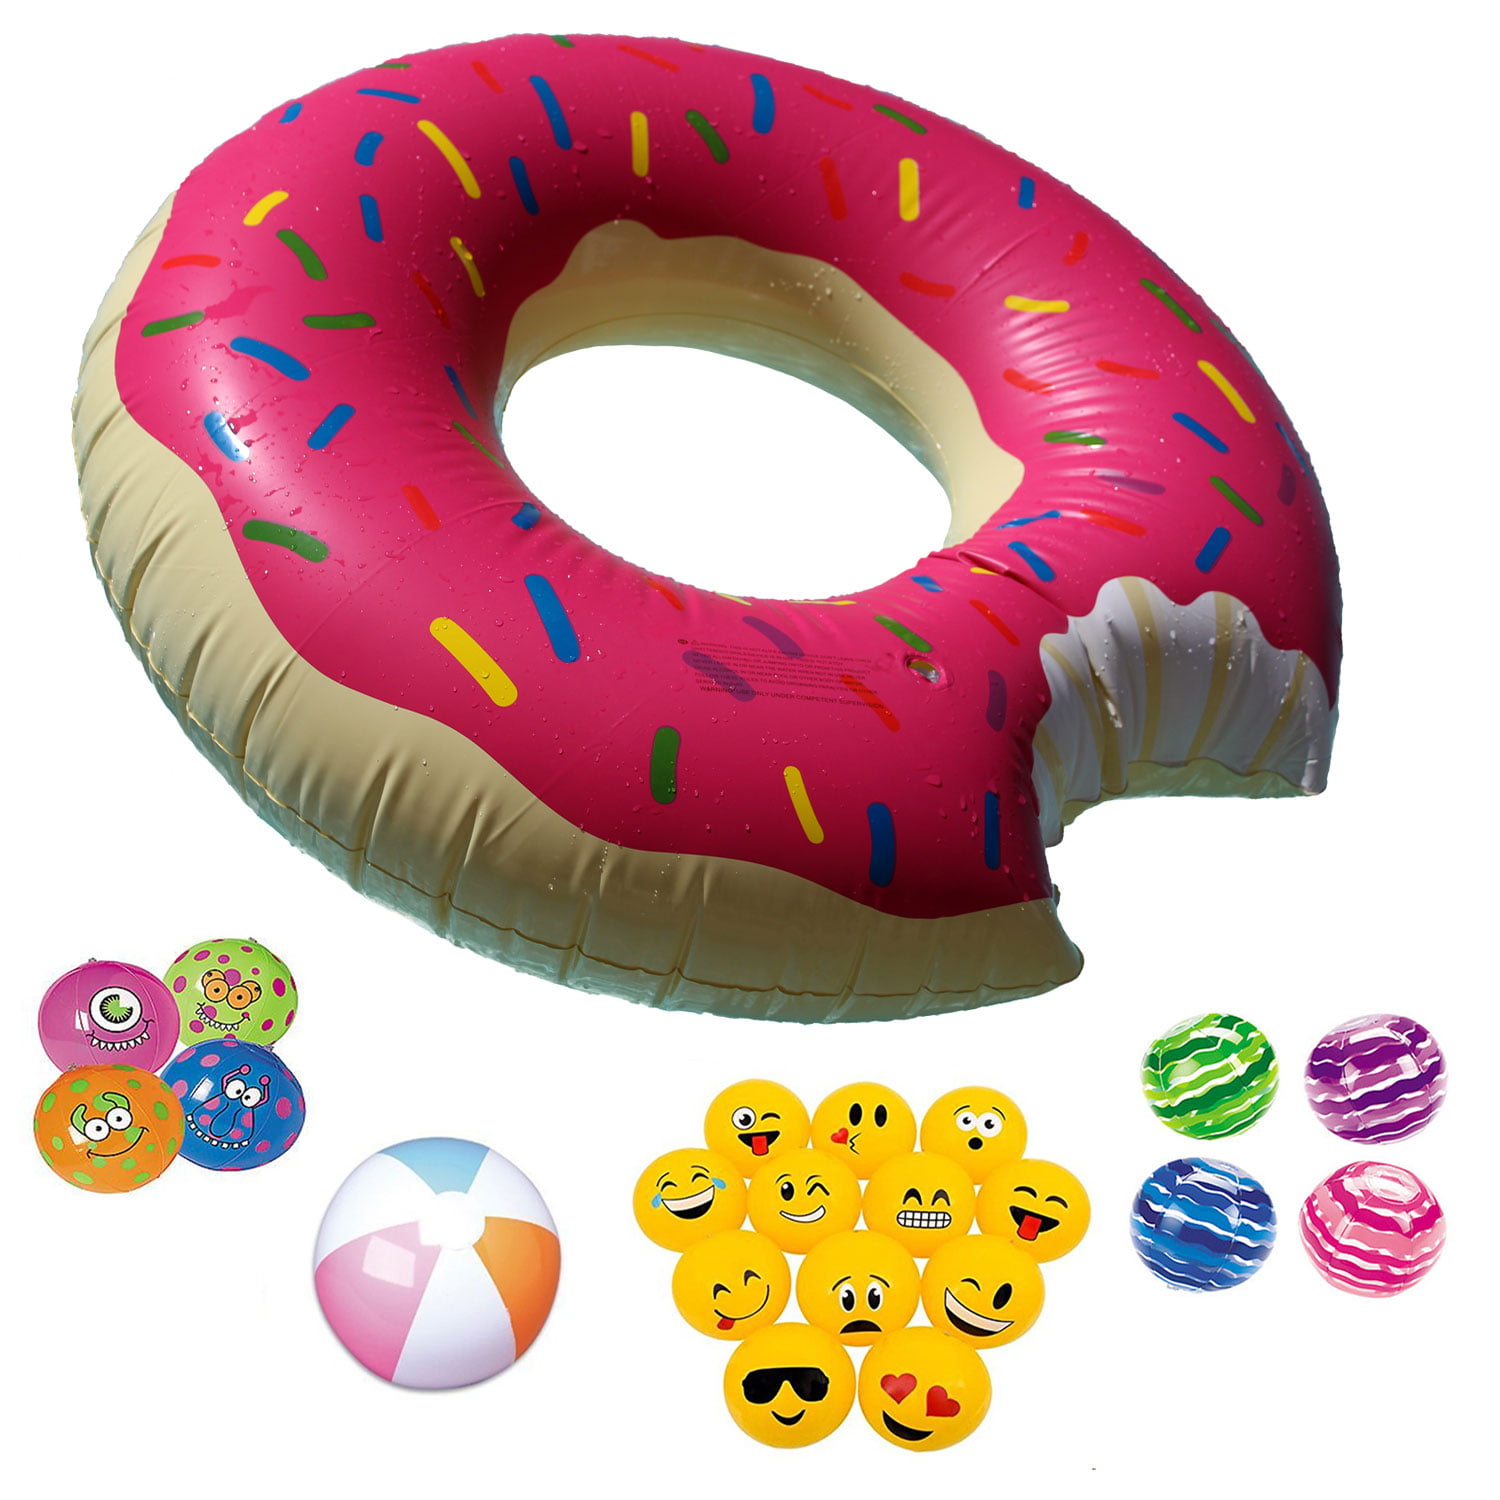 48 Inch Giant Donut Pool Float Strawberry Sprinkles Plus Bonus Beach Ball